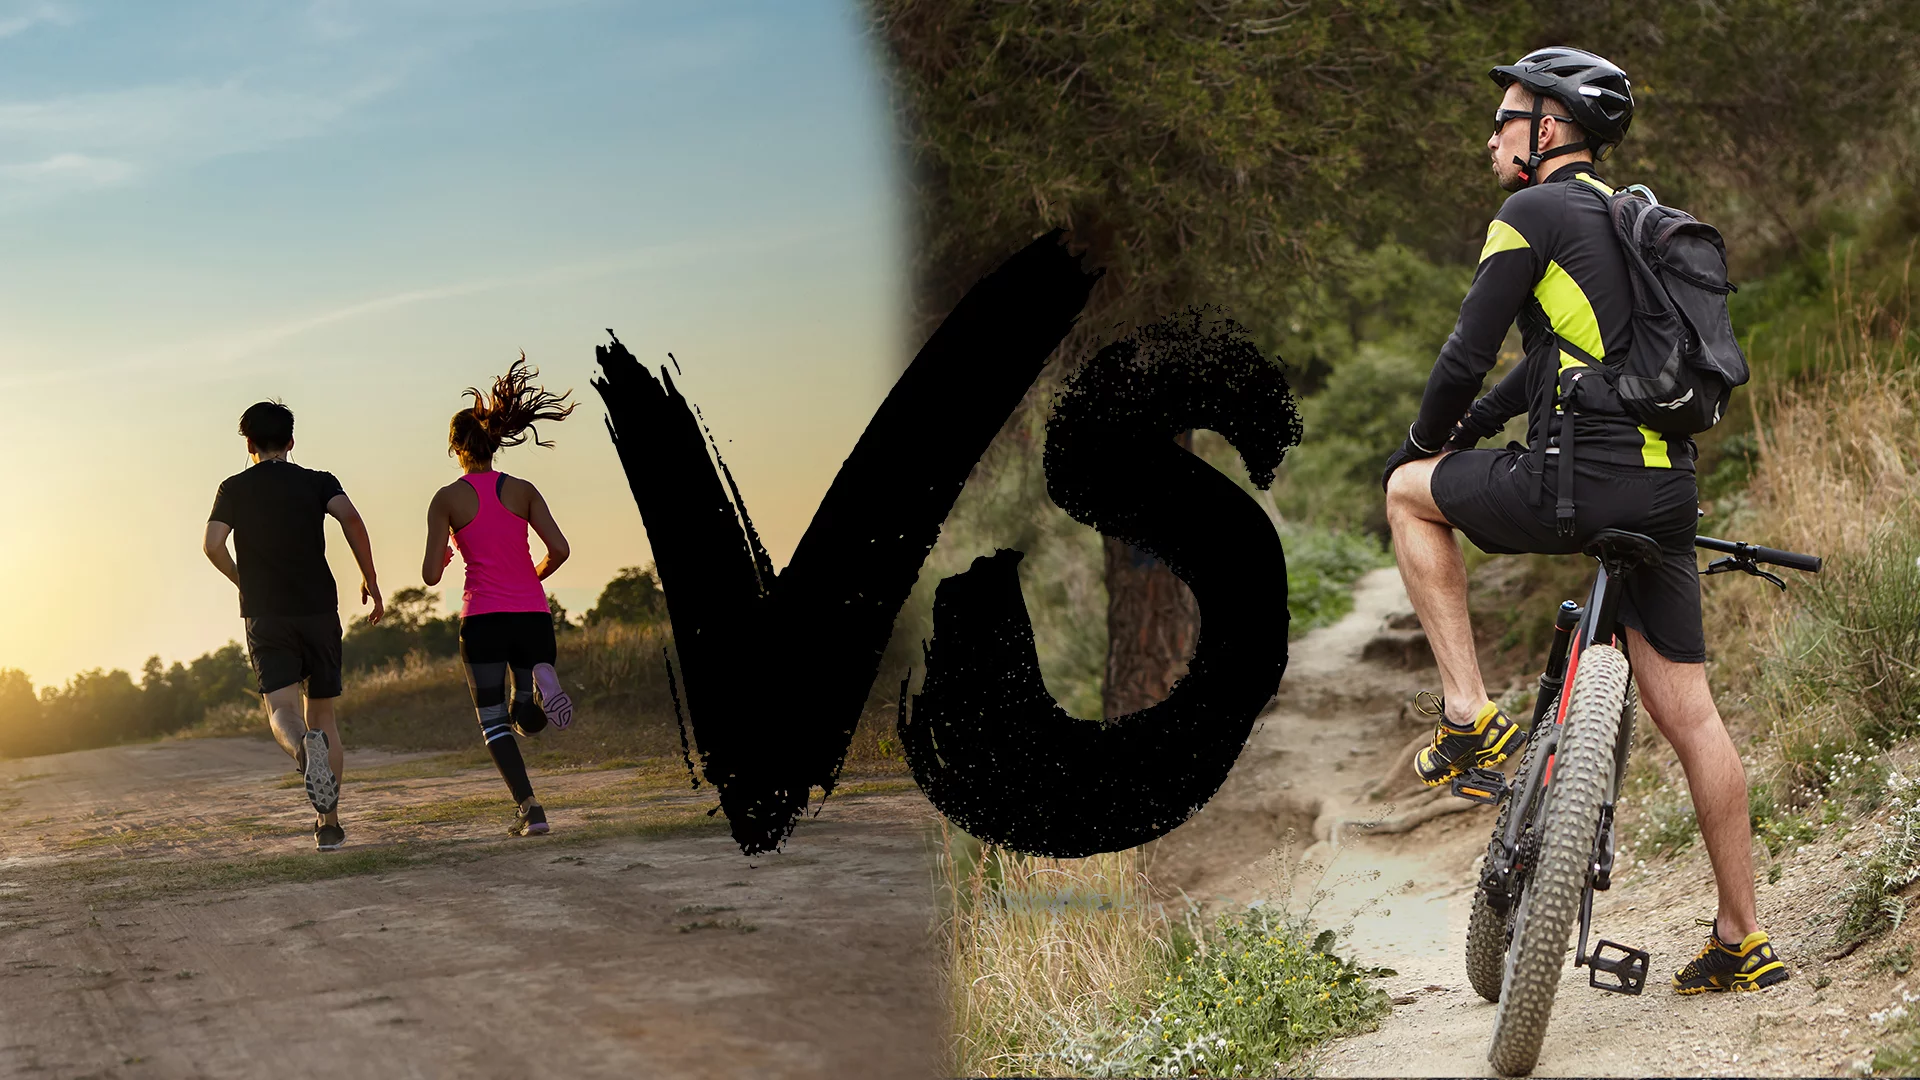 Vélo vs footing : lequel est le meilleur?